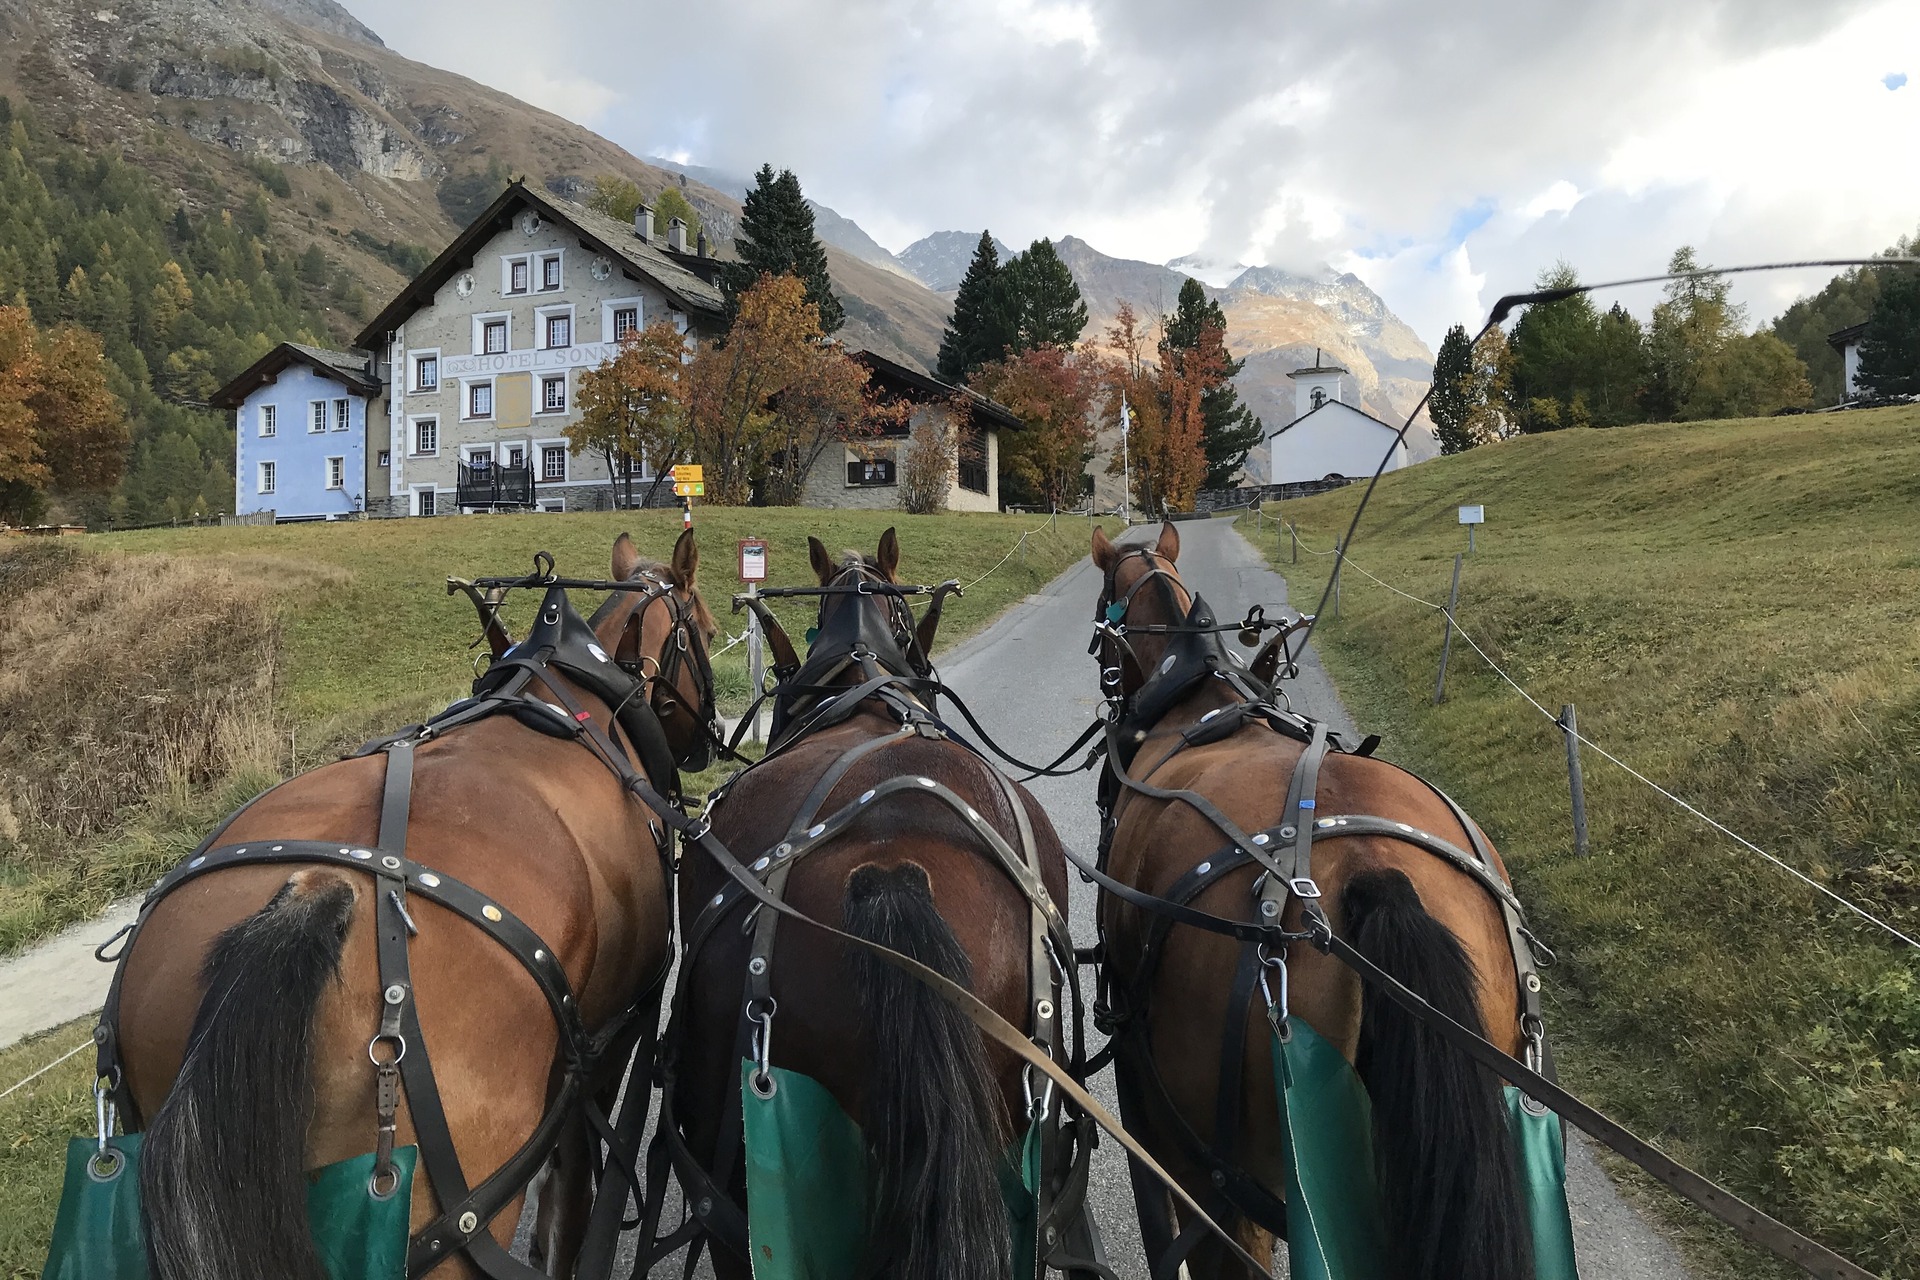 Rispetto dei suoli: un villaggio in Svizzera percorso da un carro trainato da cavalli